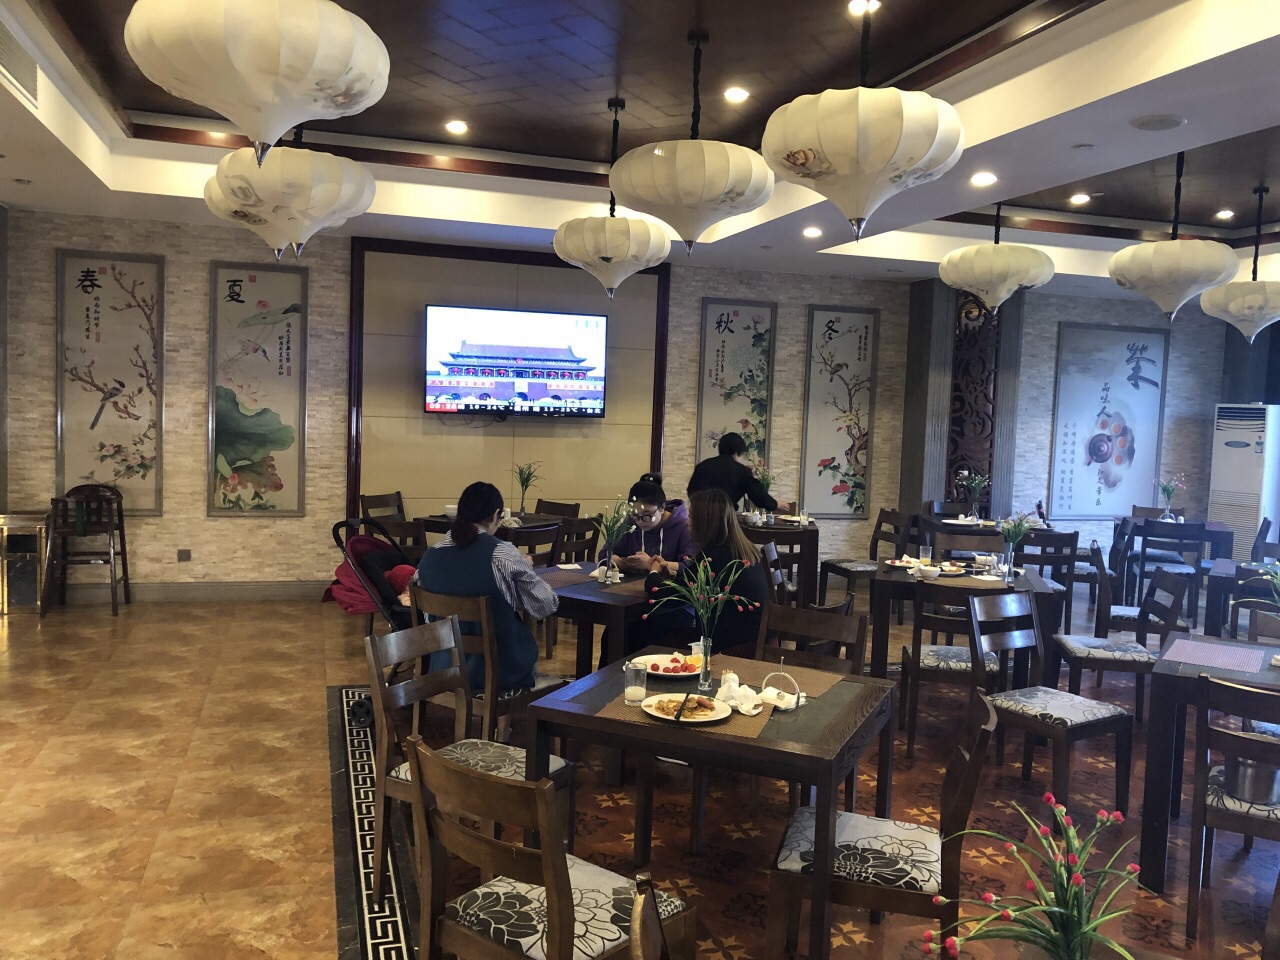 静泊山庄湖景餐厅(茶文化度假酒店)